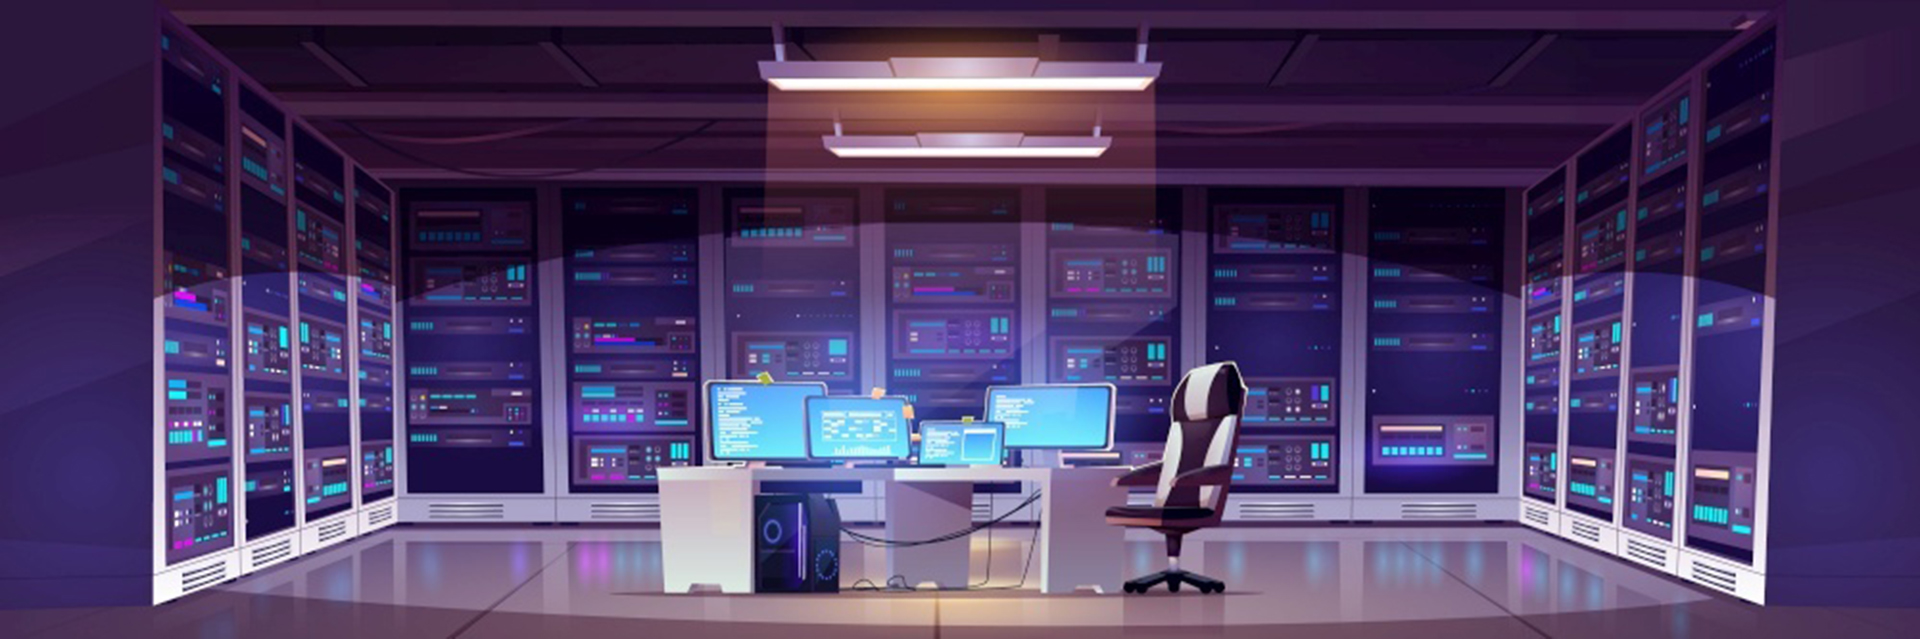 Ruang pusat data dengan perangkat keras server, kursi dan meja dengan monitor komputer.Interior kartun vektor kantor penyimpanan informasi dengan panel kontrol, rak dengan perangkat keras untuk jaringan